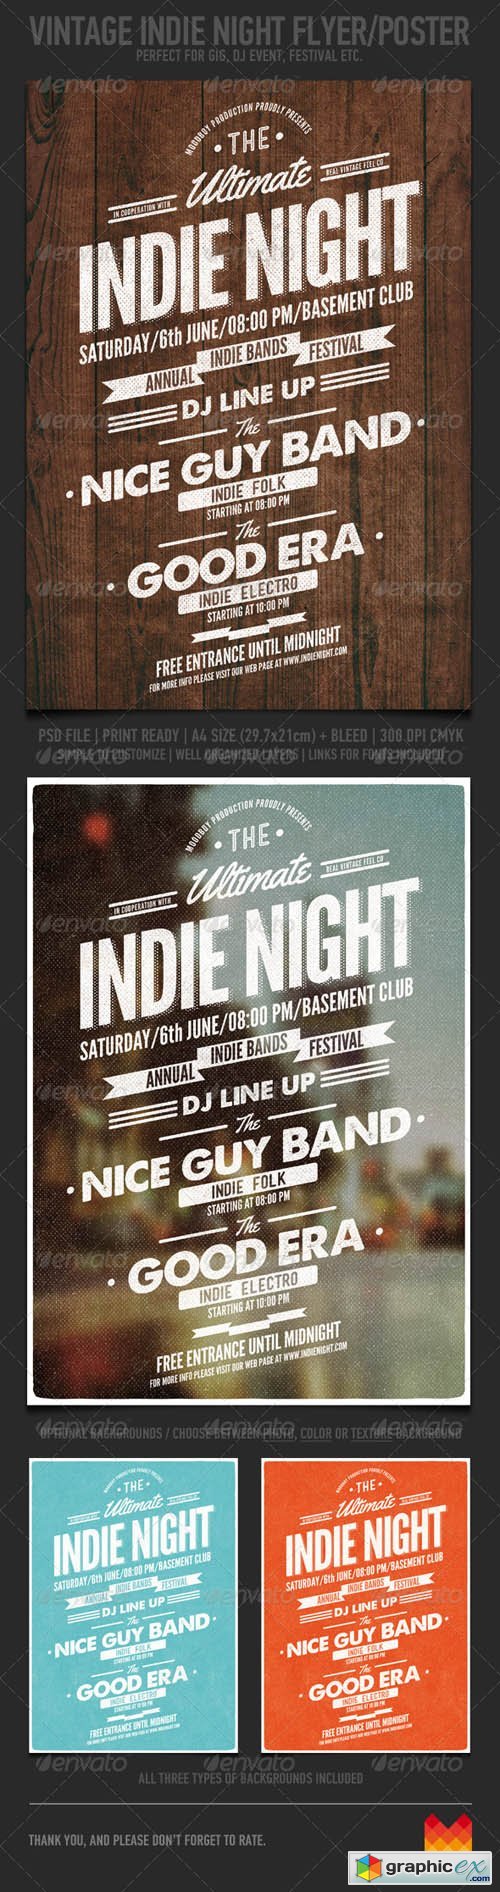 Vintage Indie Night Flyer/Poster